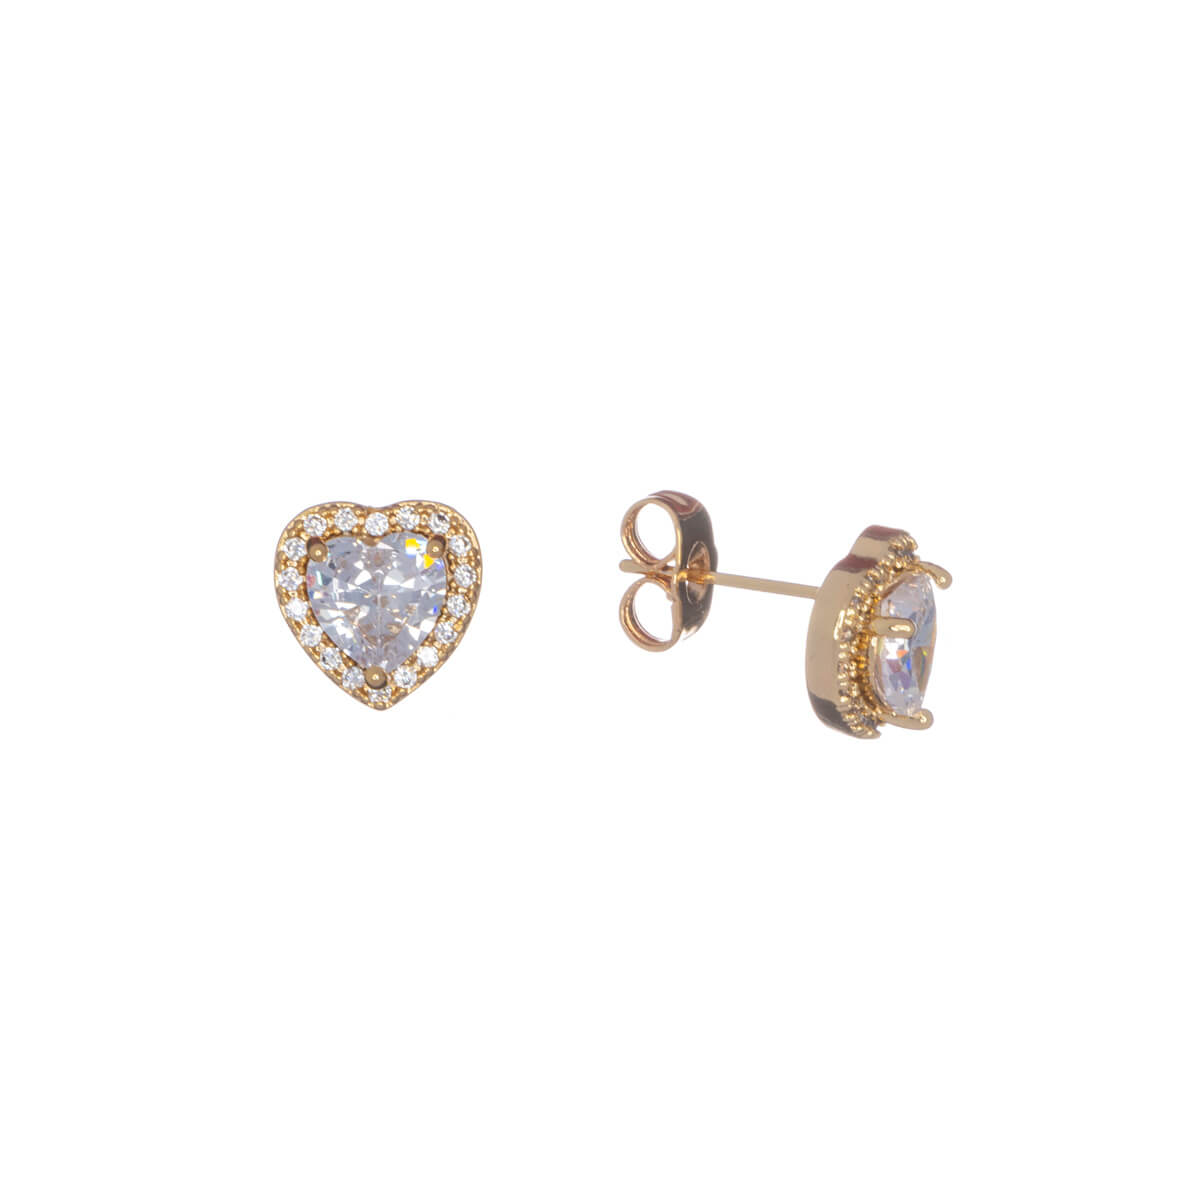 Zirconia heart earrings